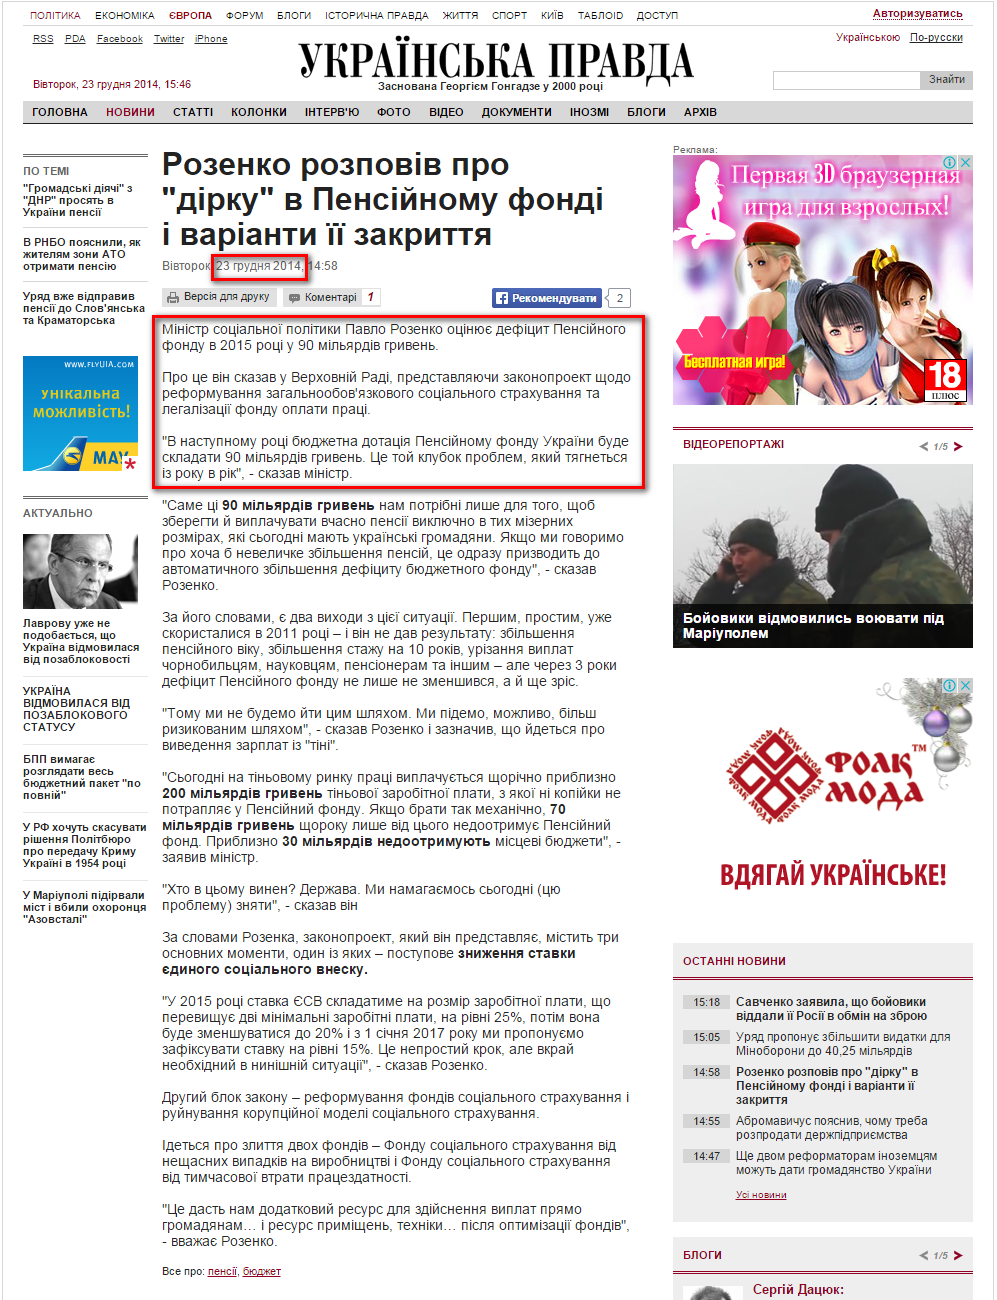 http://www.pravda.com.ua/news/2014/12/23/7053025/